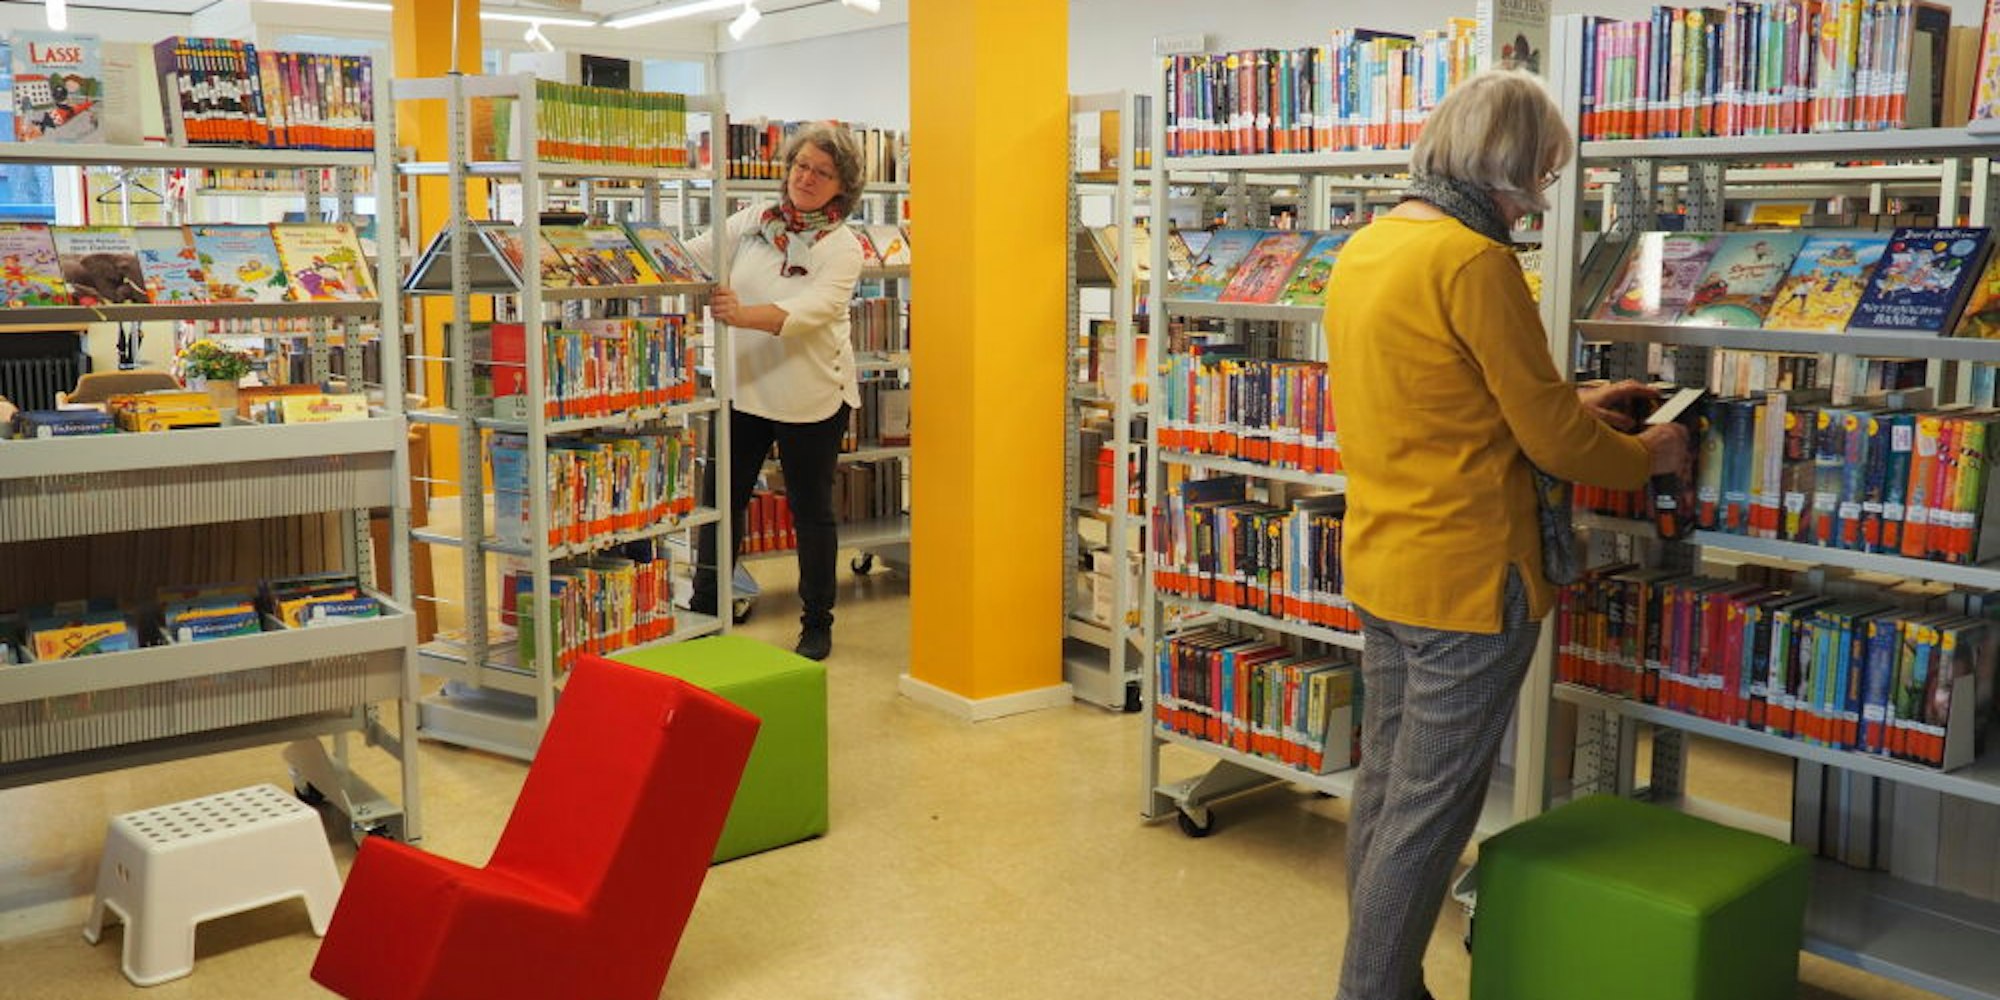 Noch vor eineinhalb Jahren ist die Stommelner Bücherei mit neuen Regalen auf Rollen ausgestattet worden. Anette Göhler zeigt, wie schnell sie Platz für Veranstaltungen schaffen kann.